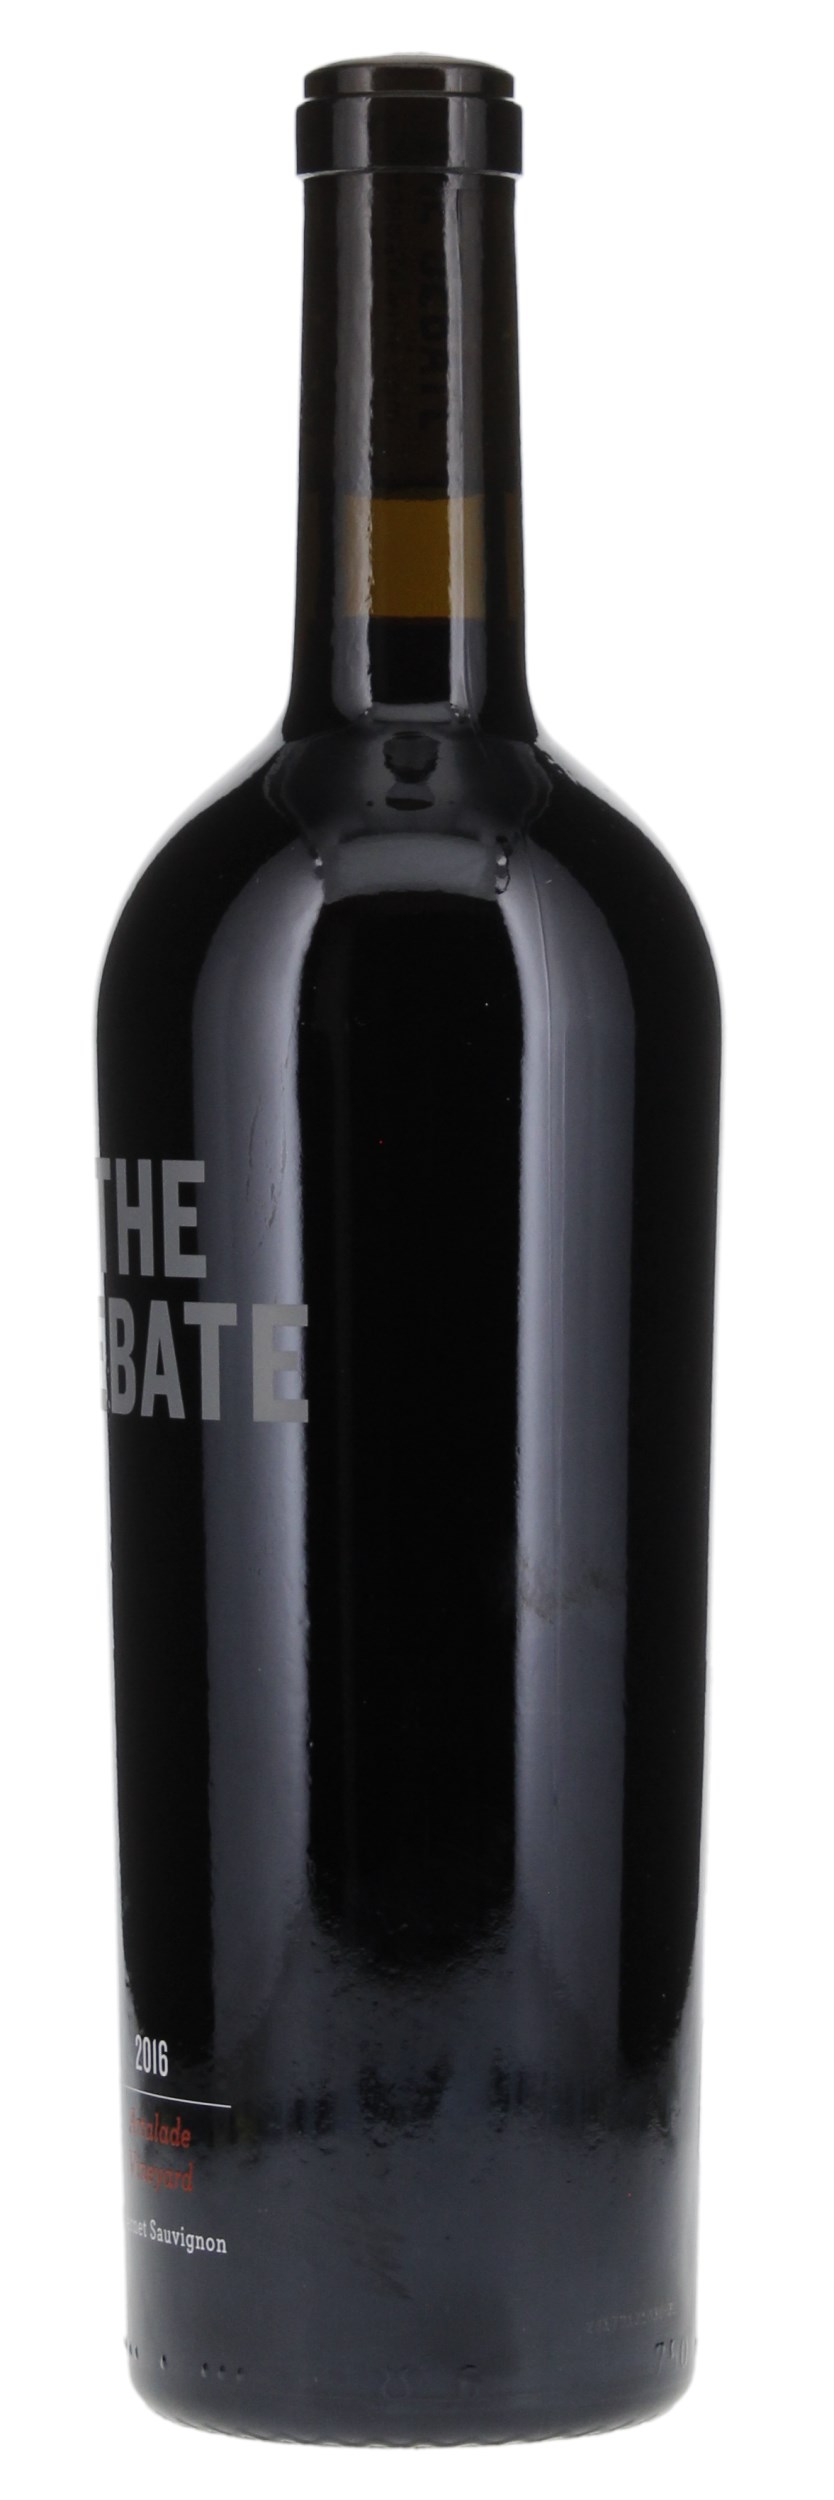 2016 The Debate Artalade Vineyard Cabernet Sauvignon, 750ml